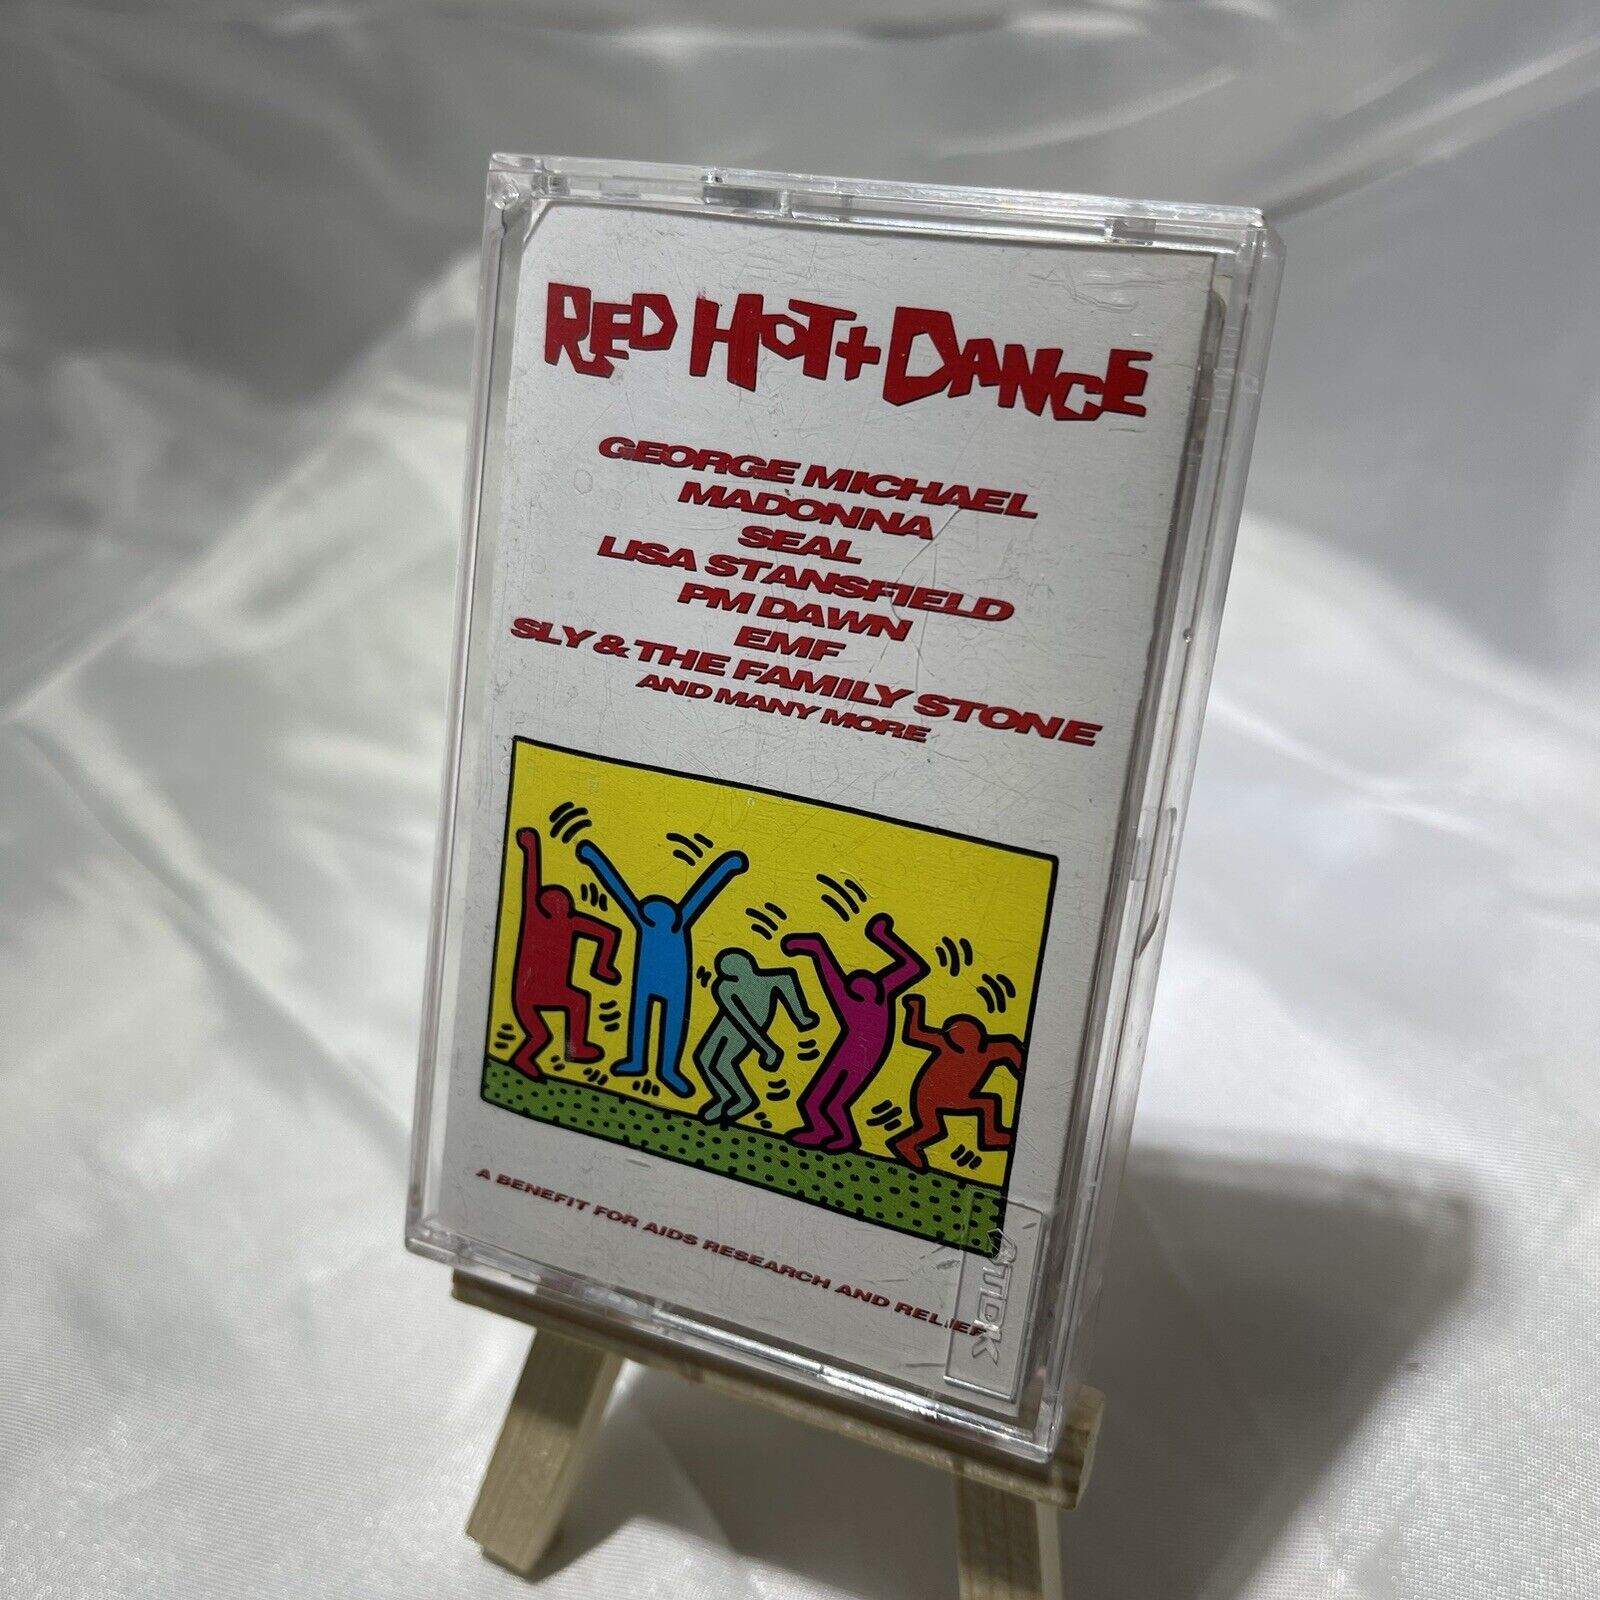 Red Hot + Dance Various Artists VTG 1992 Cassette Sony Records